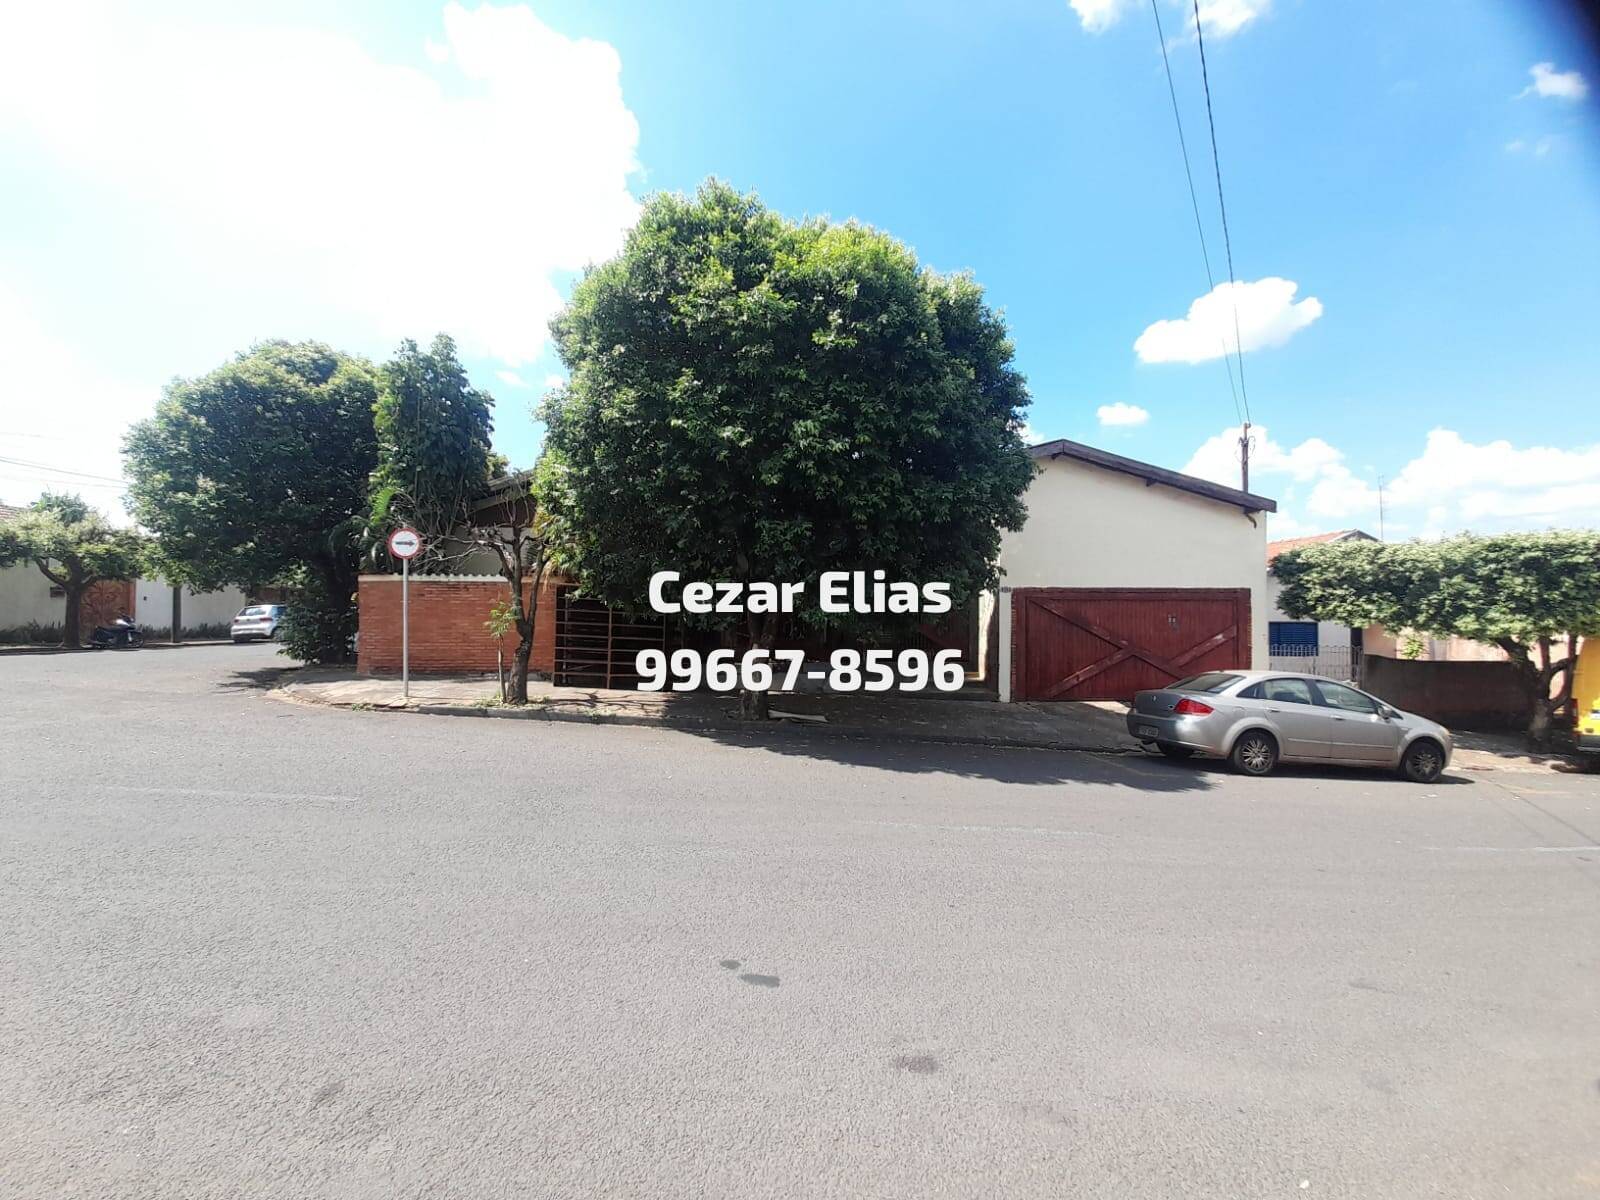 Corretor de imóveis em Andradina - Antonio Cezar Elias